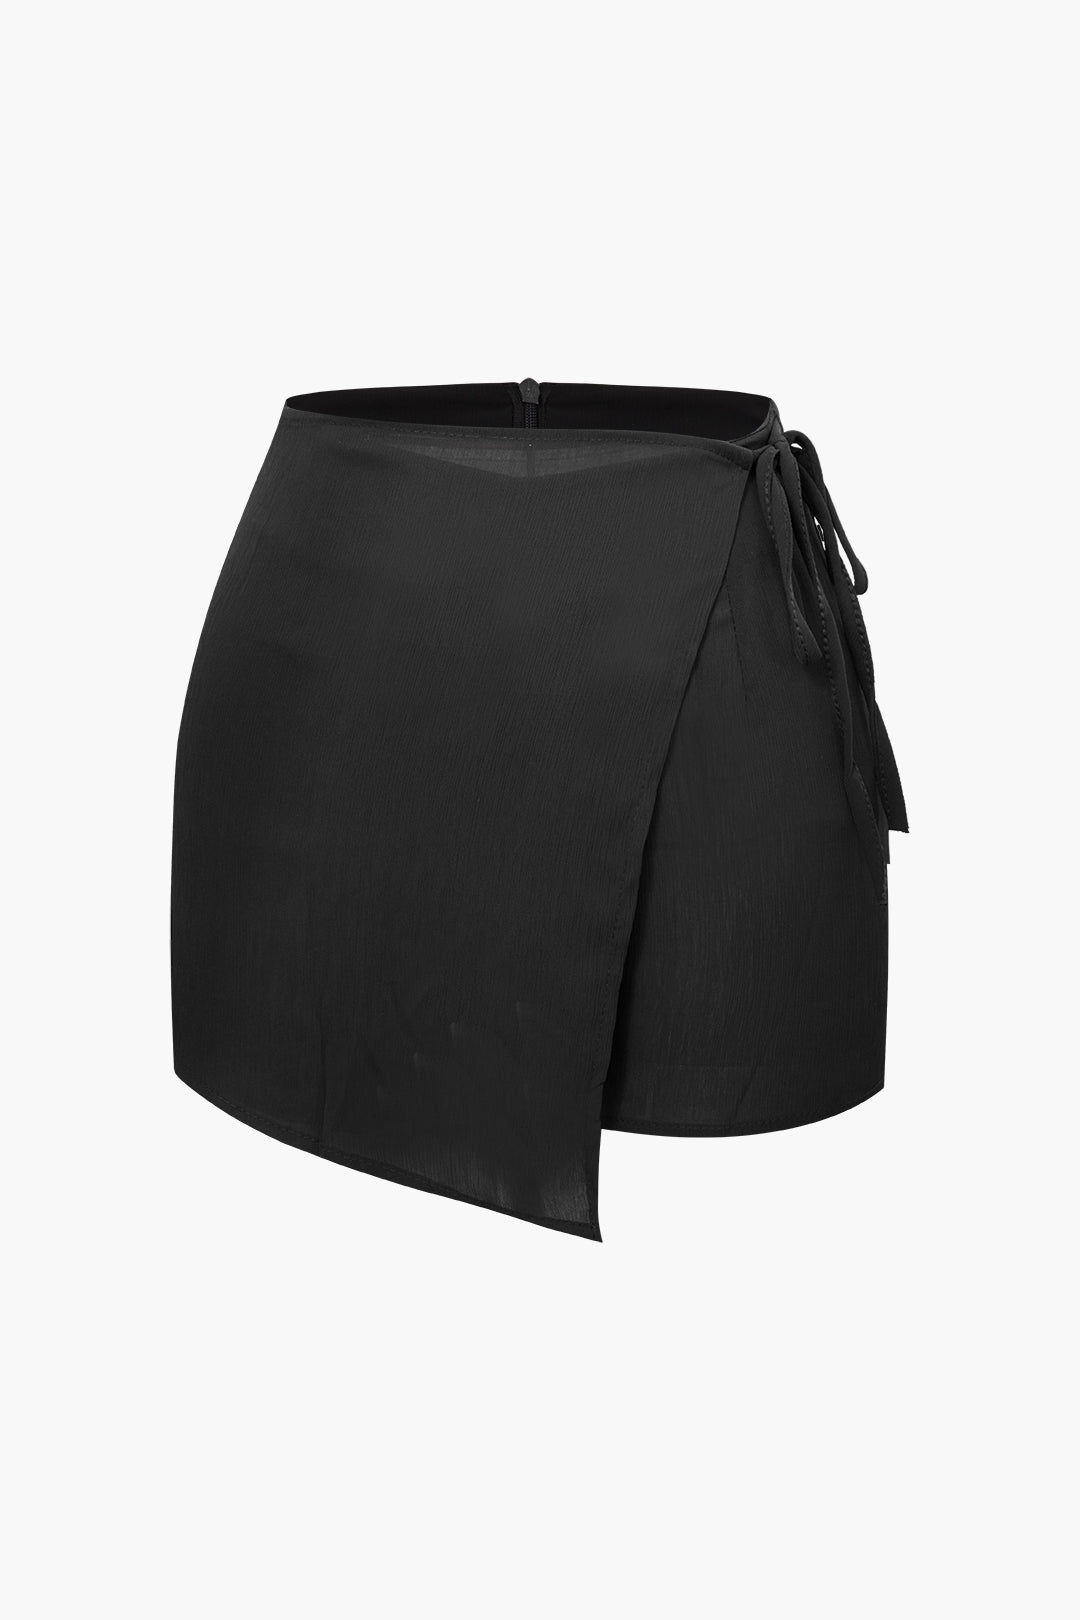 Women's Shorts | Casual Shorts For Women | MICAS